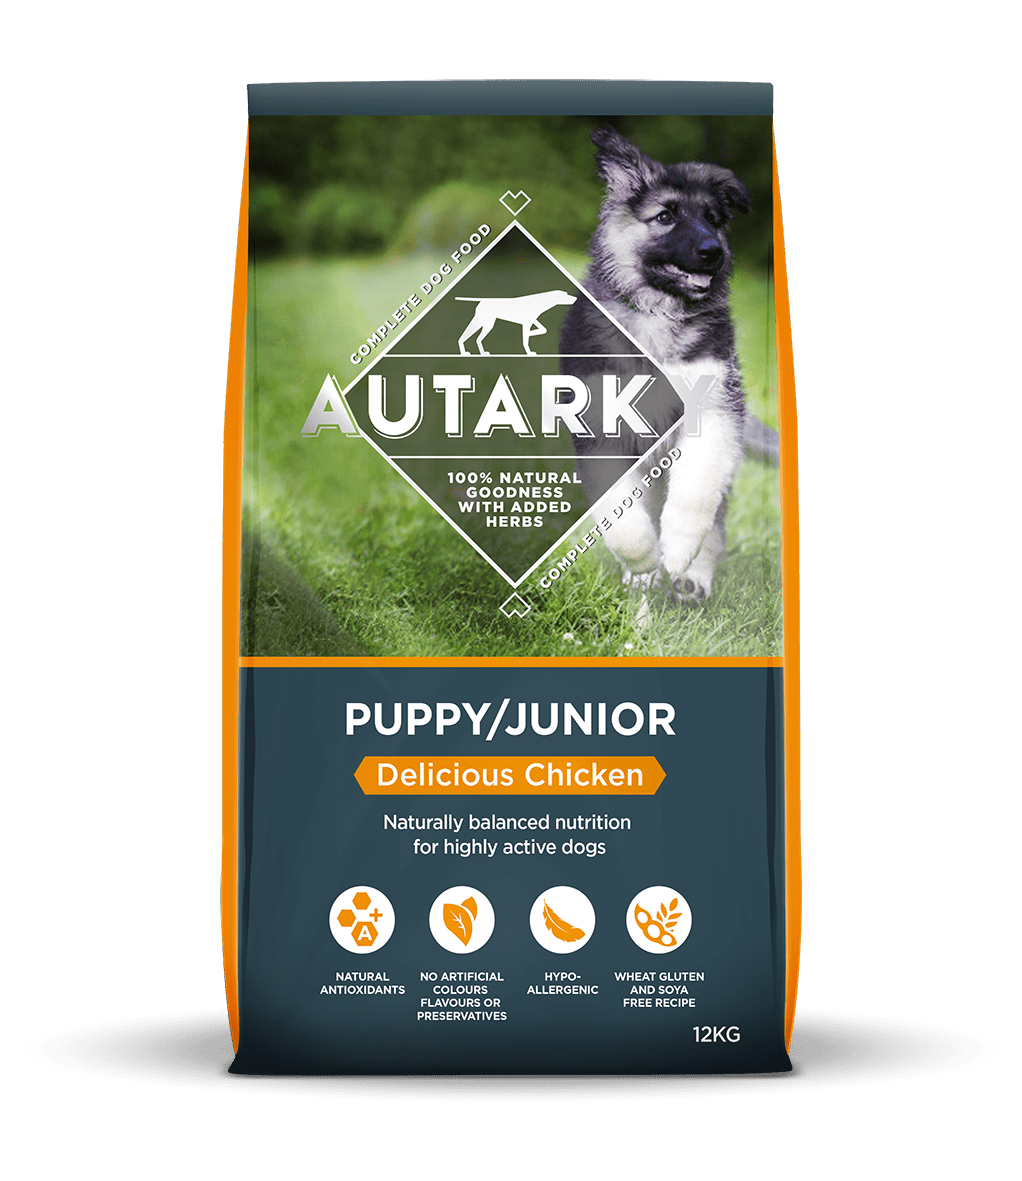 Autarky Puppy Junior Chicken, Autarky, 12 kg